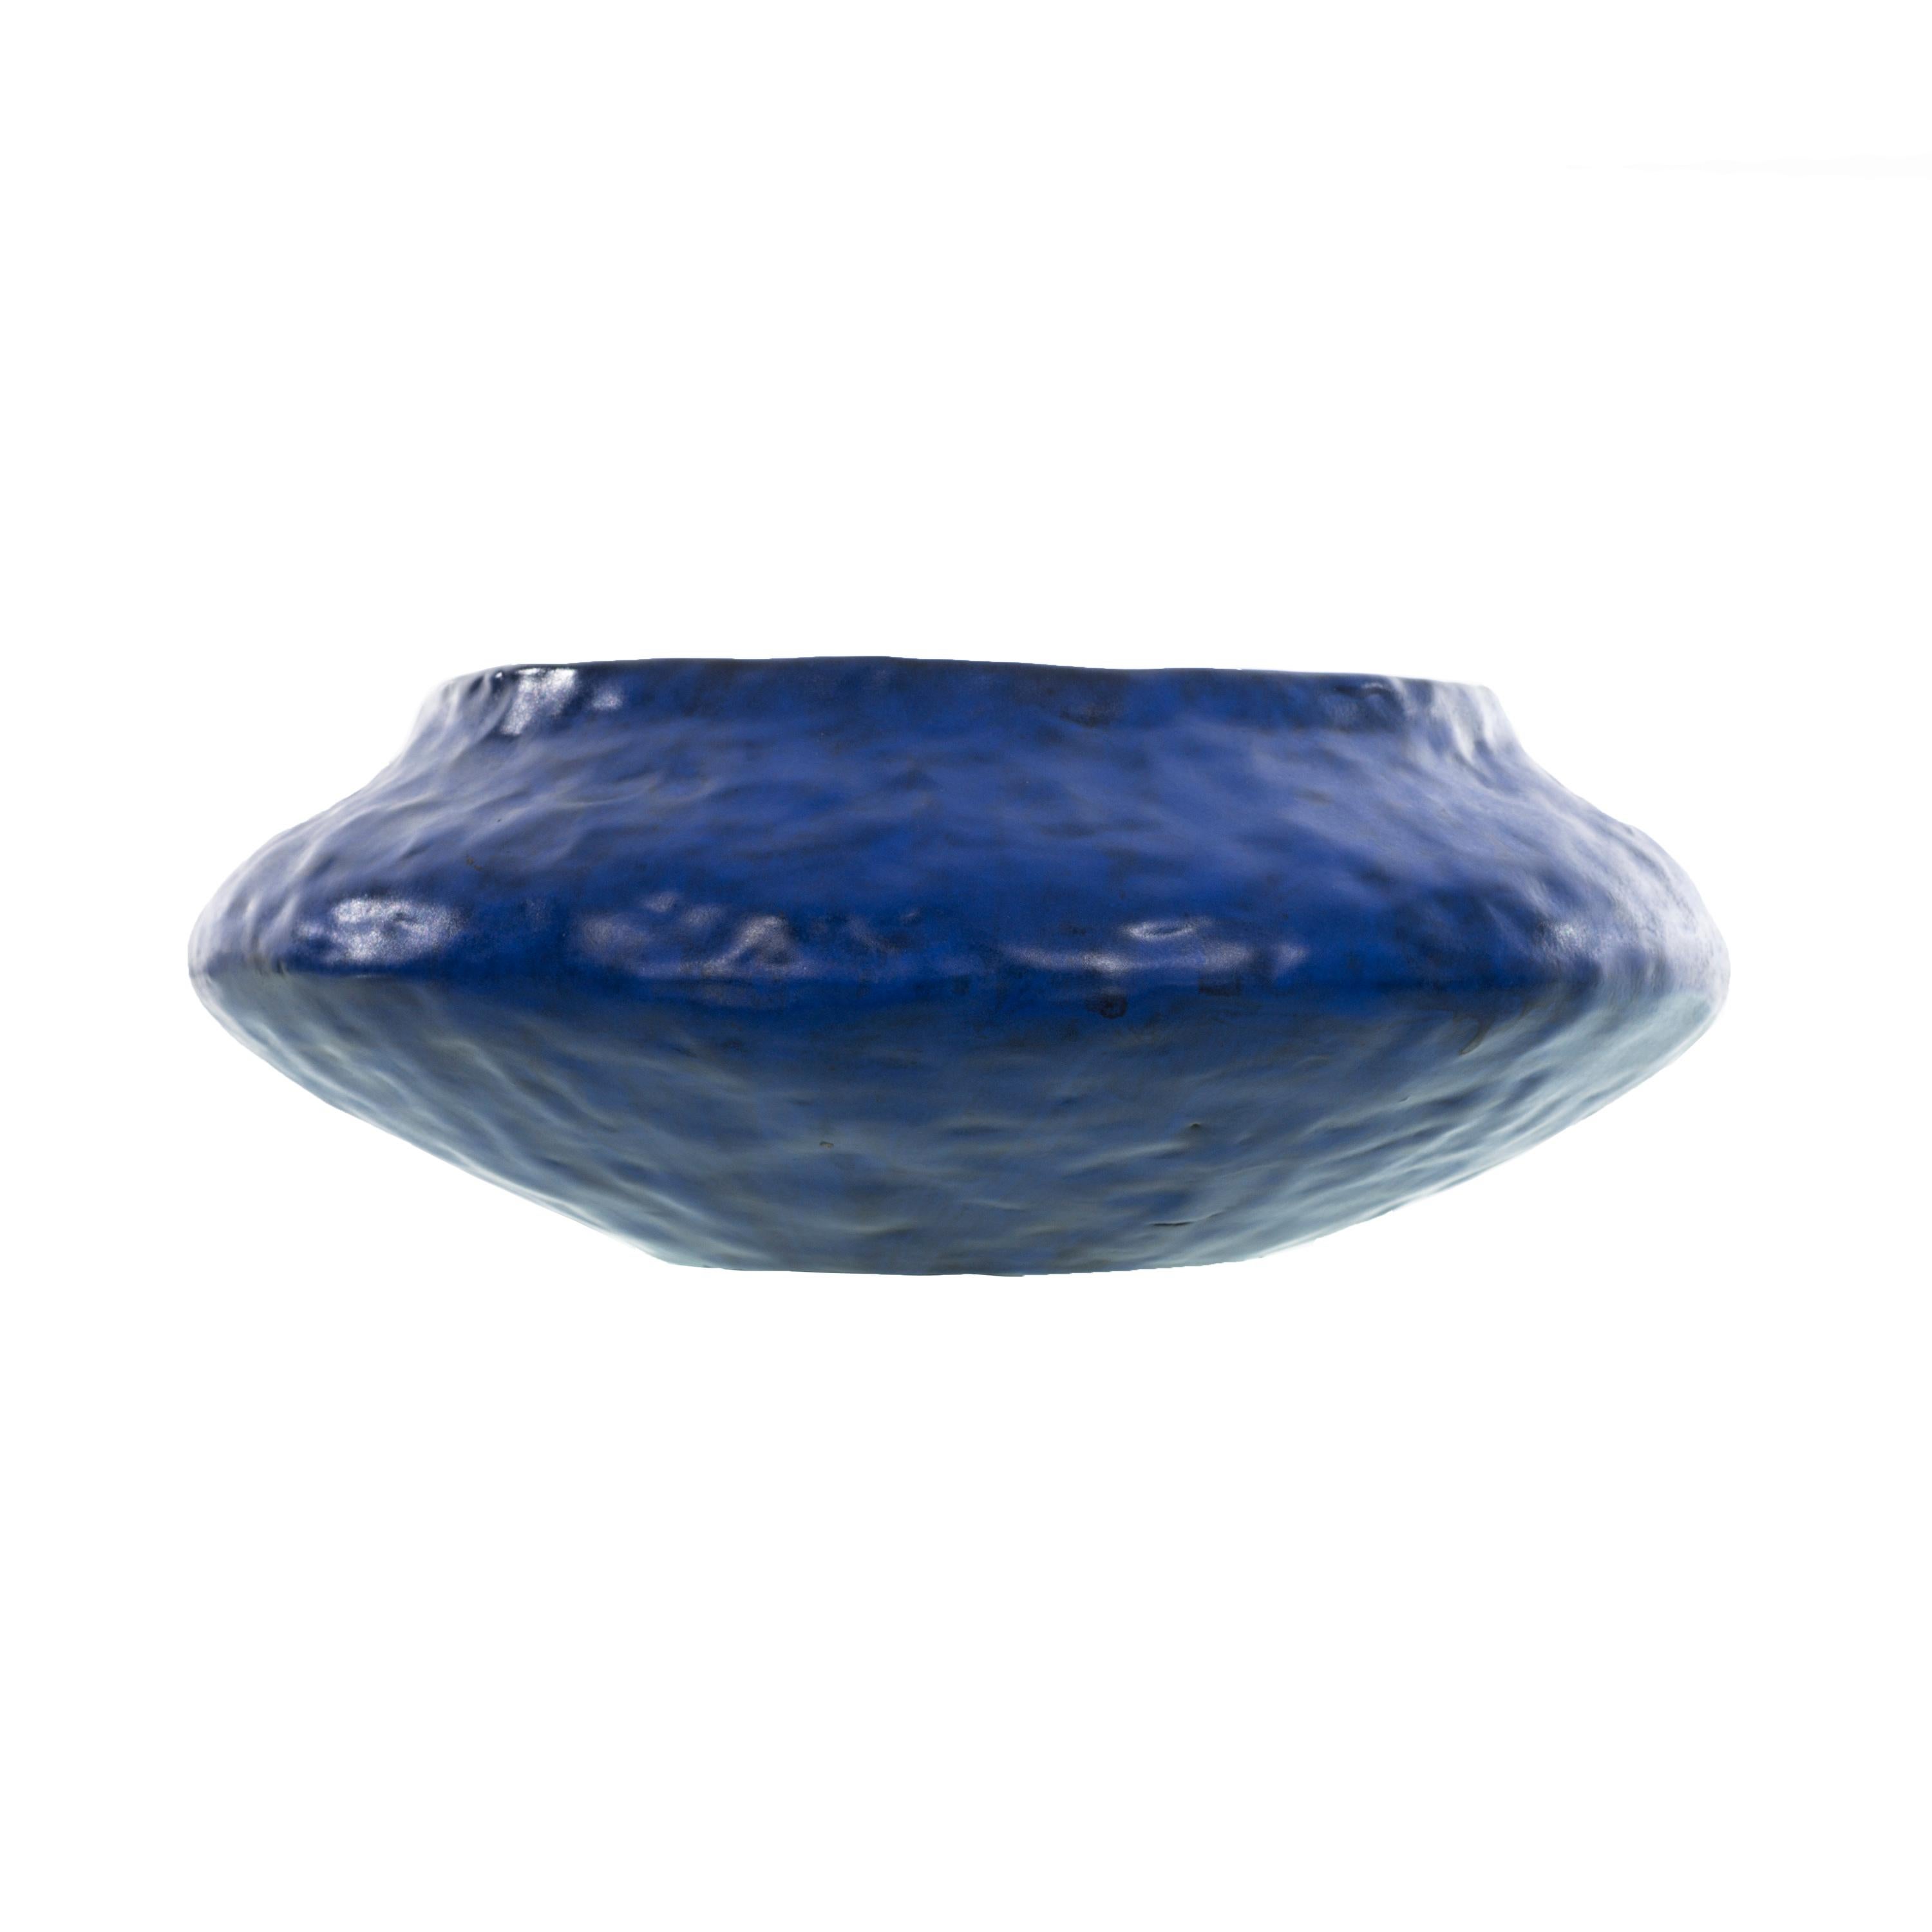 Marchello Fantoni Vibrant Blue Bowl